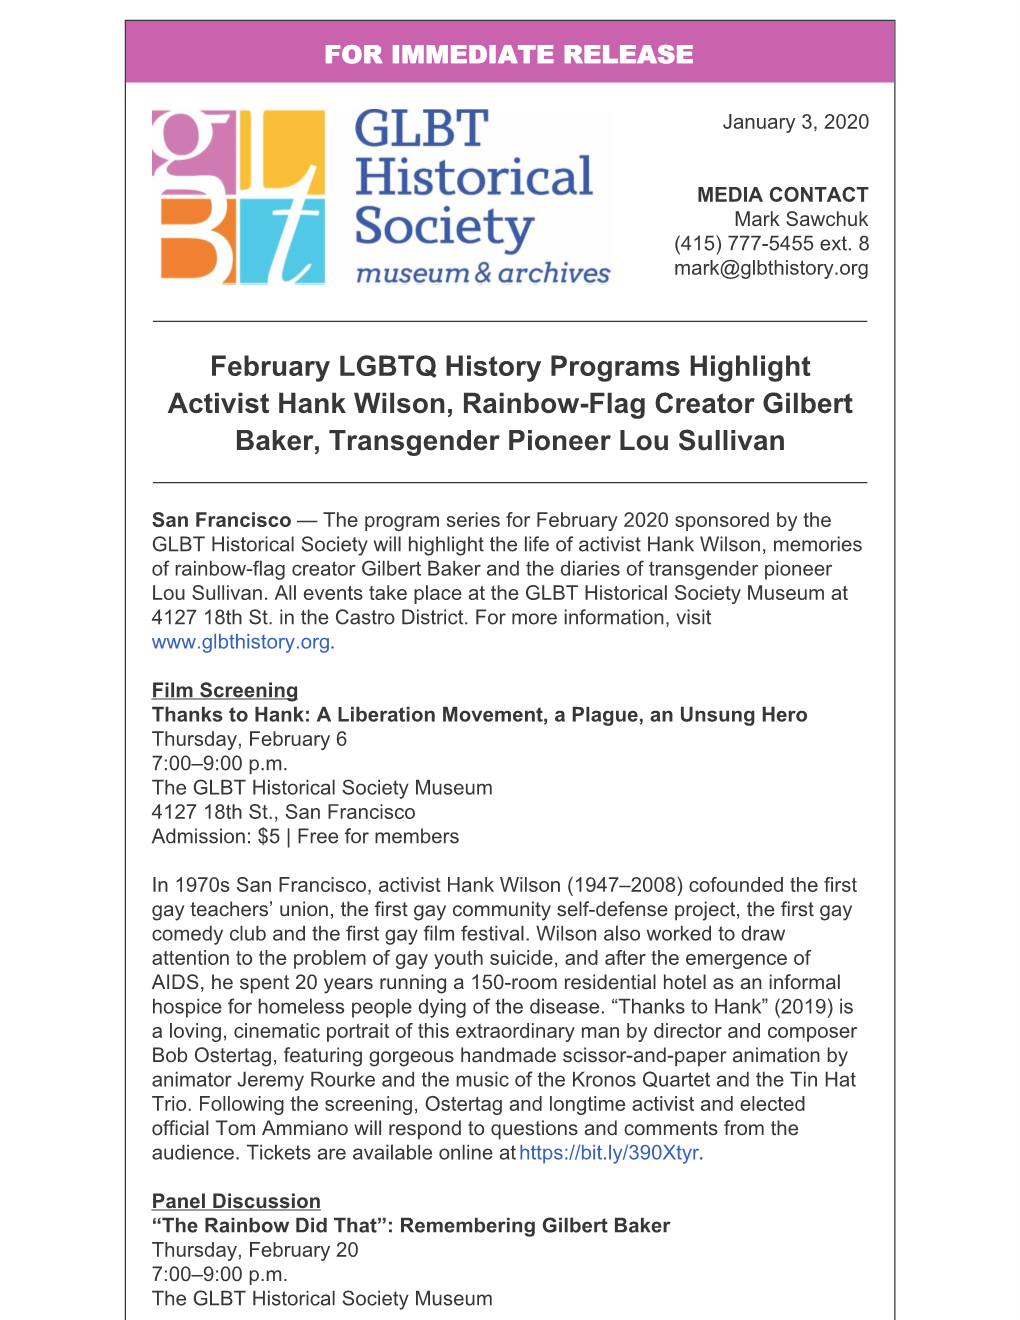 February LGBTQ History Programs Highlight Activist Hank Wilson, Rainbow-Flag Creator Gilbert Baker, Transgender Pioneer Lou Sullivan